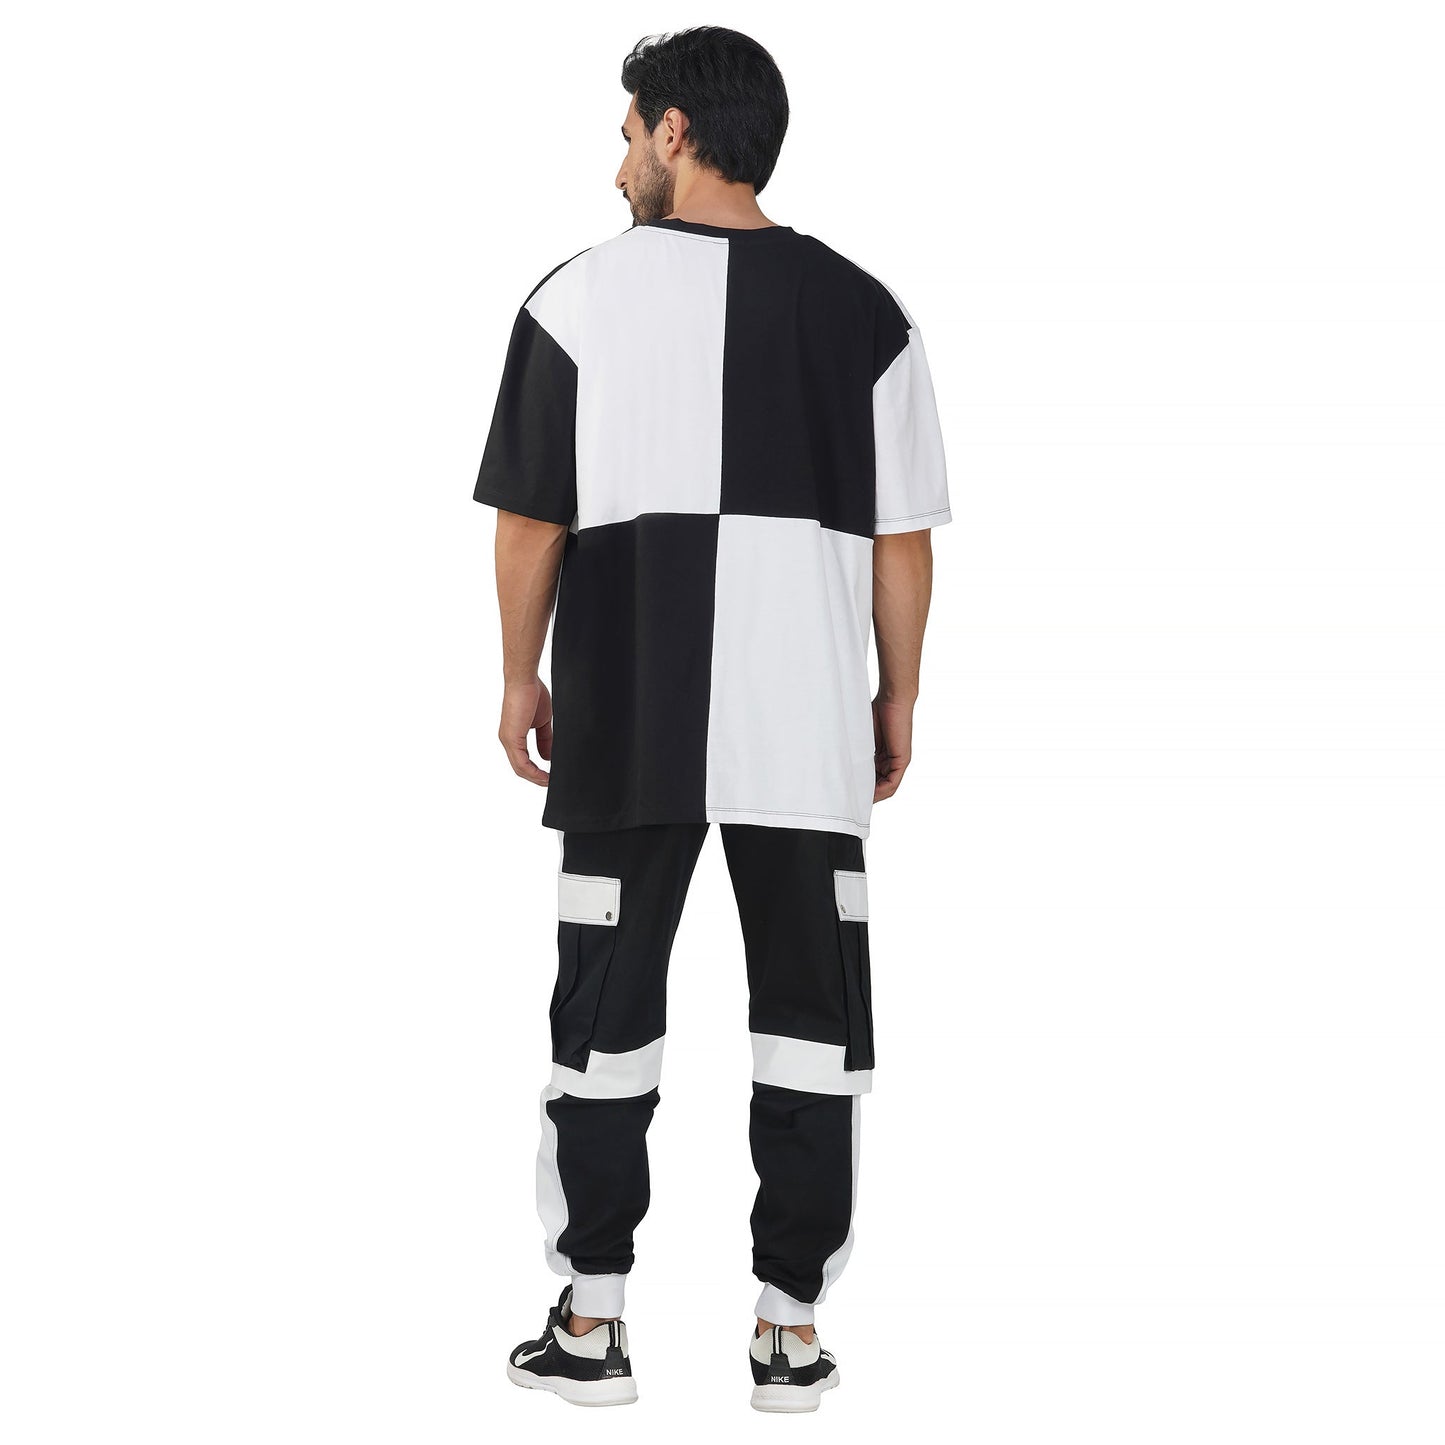 SLAY. Men's Colorblock Oversized Black & White T-shirt